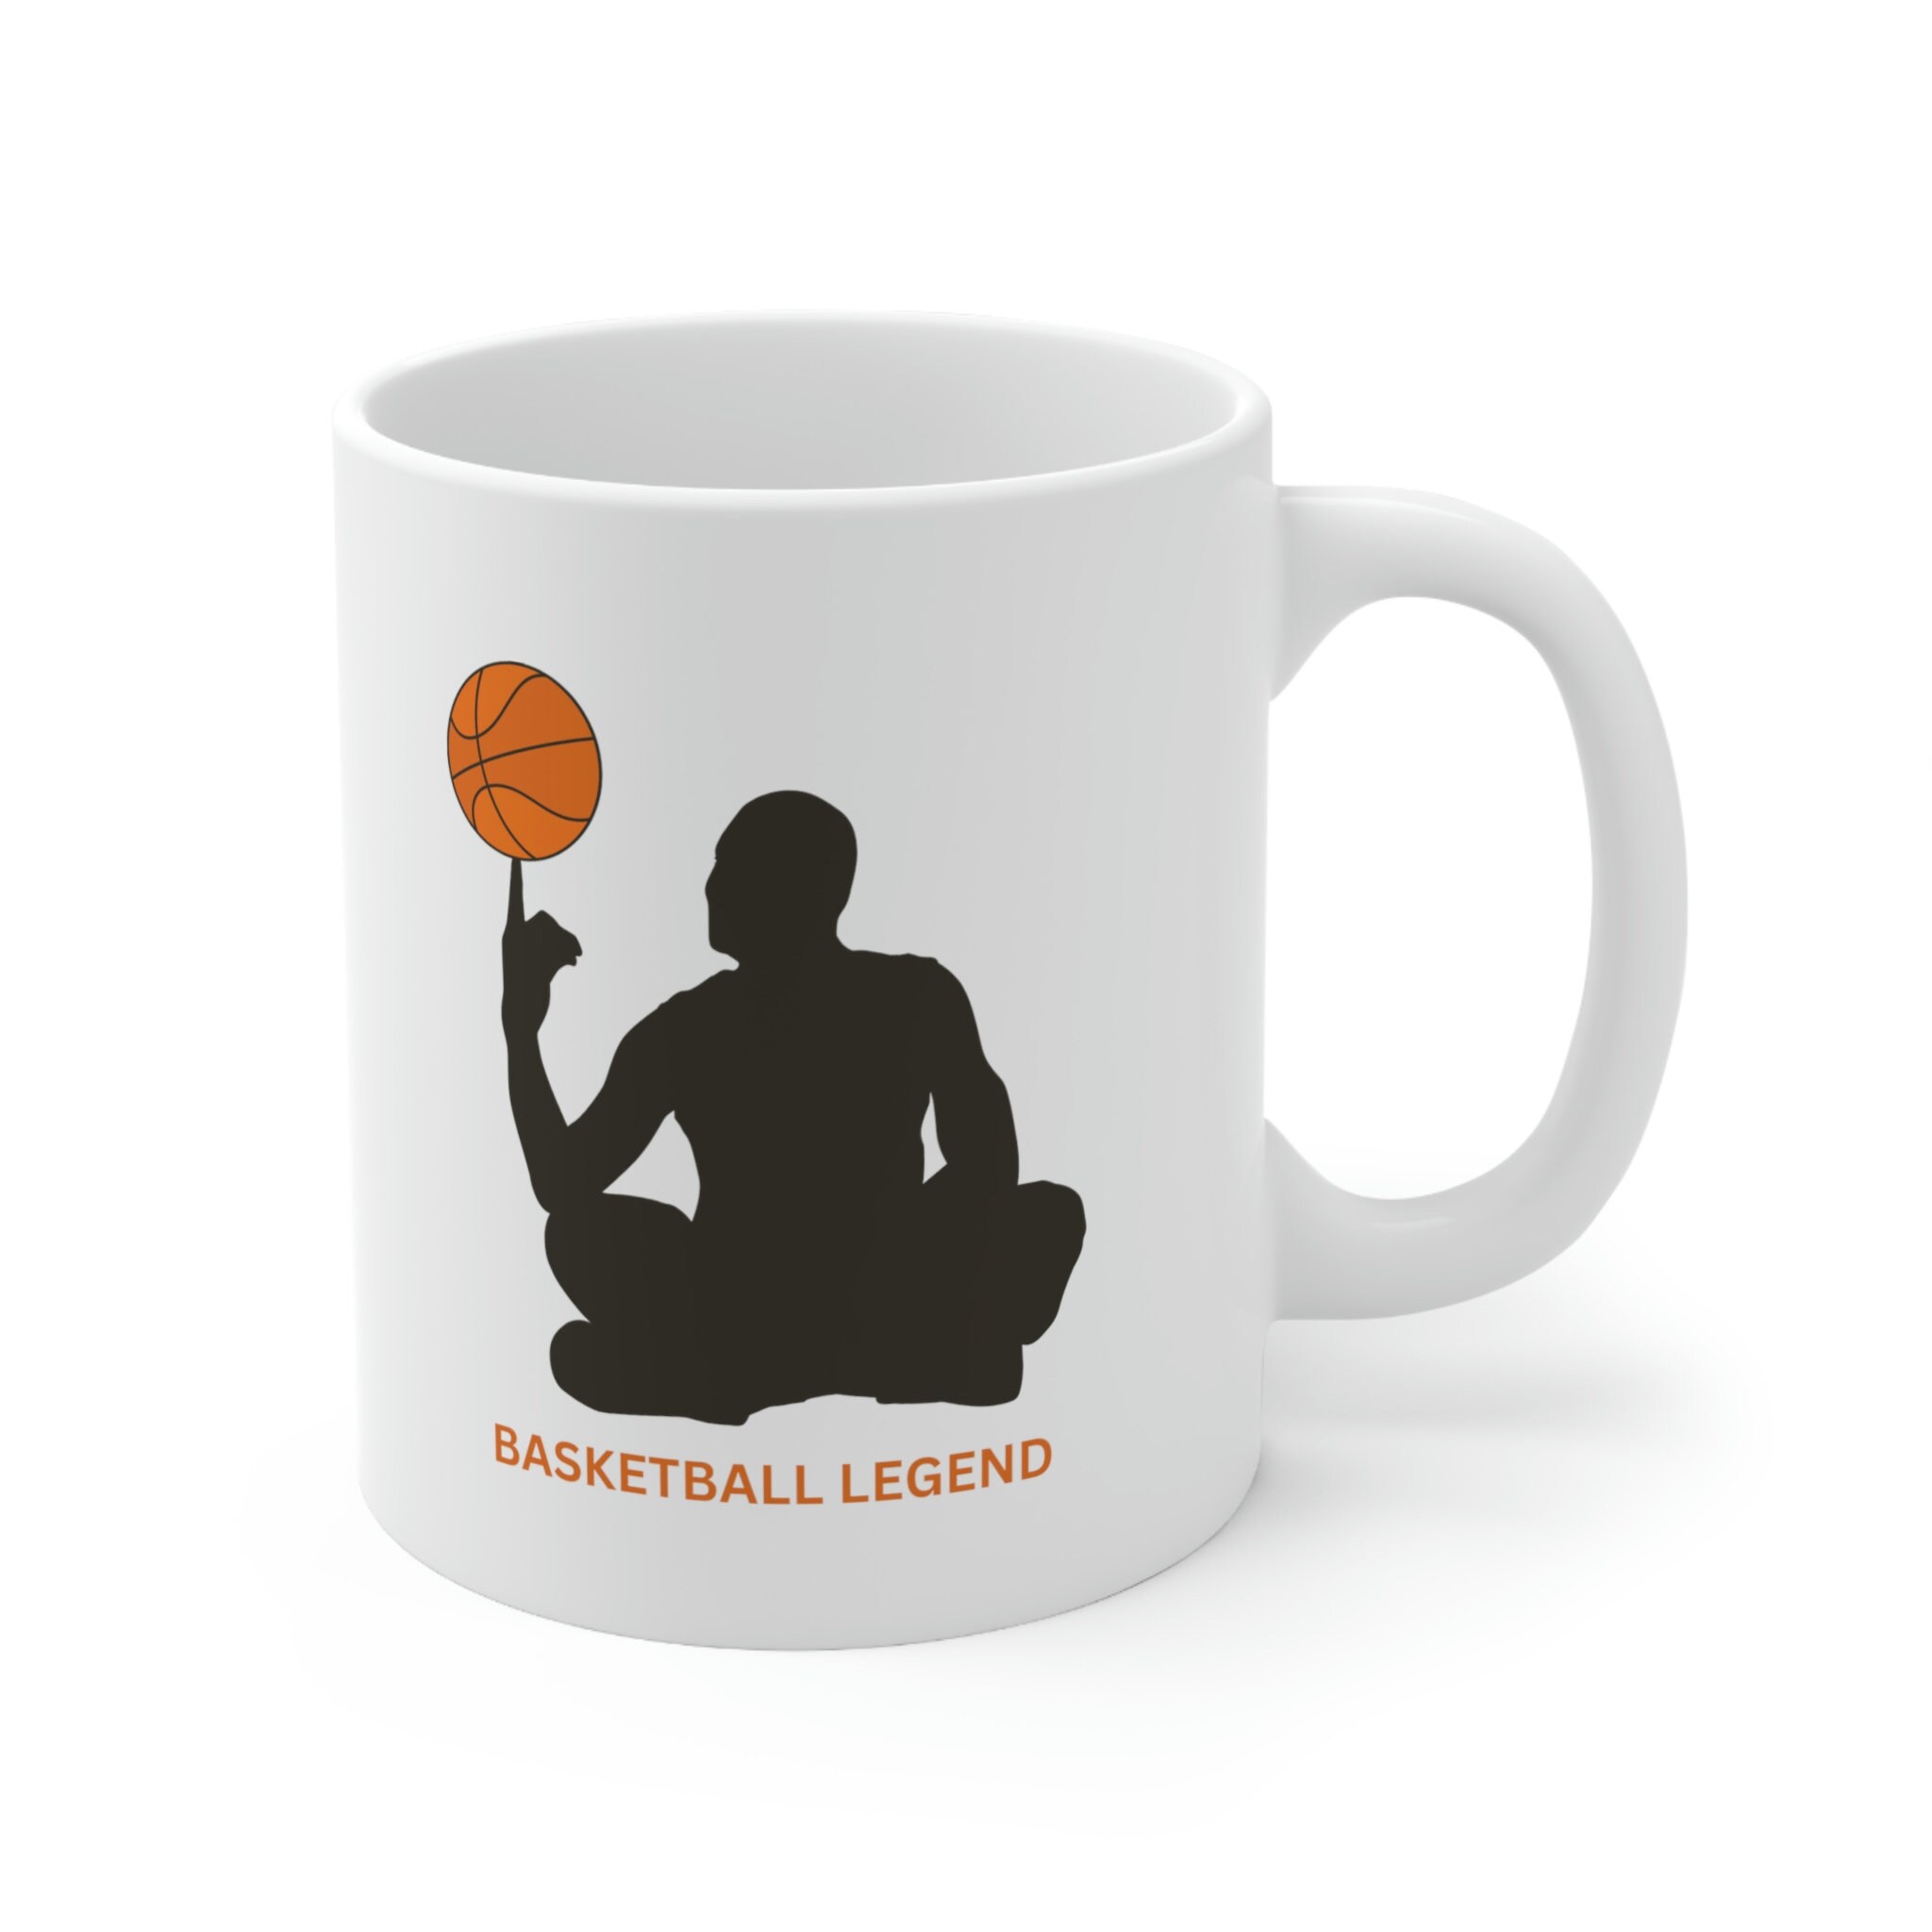 Discover Basketball Mug, Basketball Legend, Basketball Gift